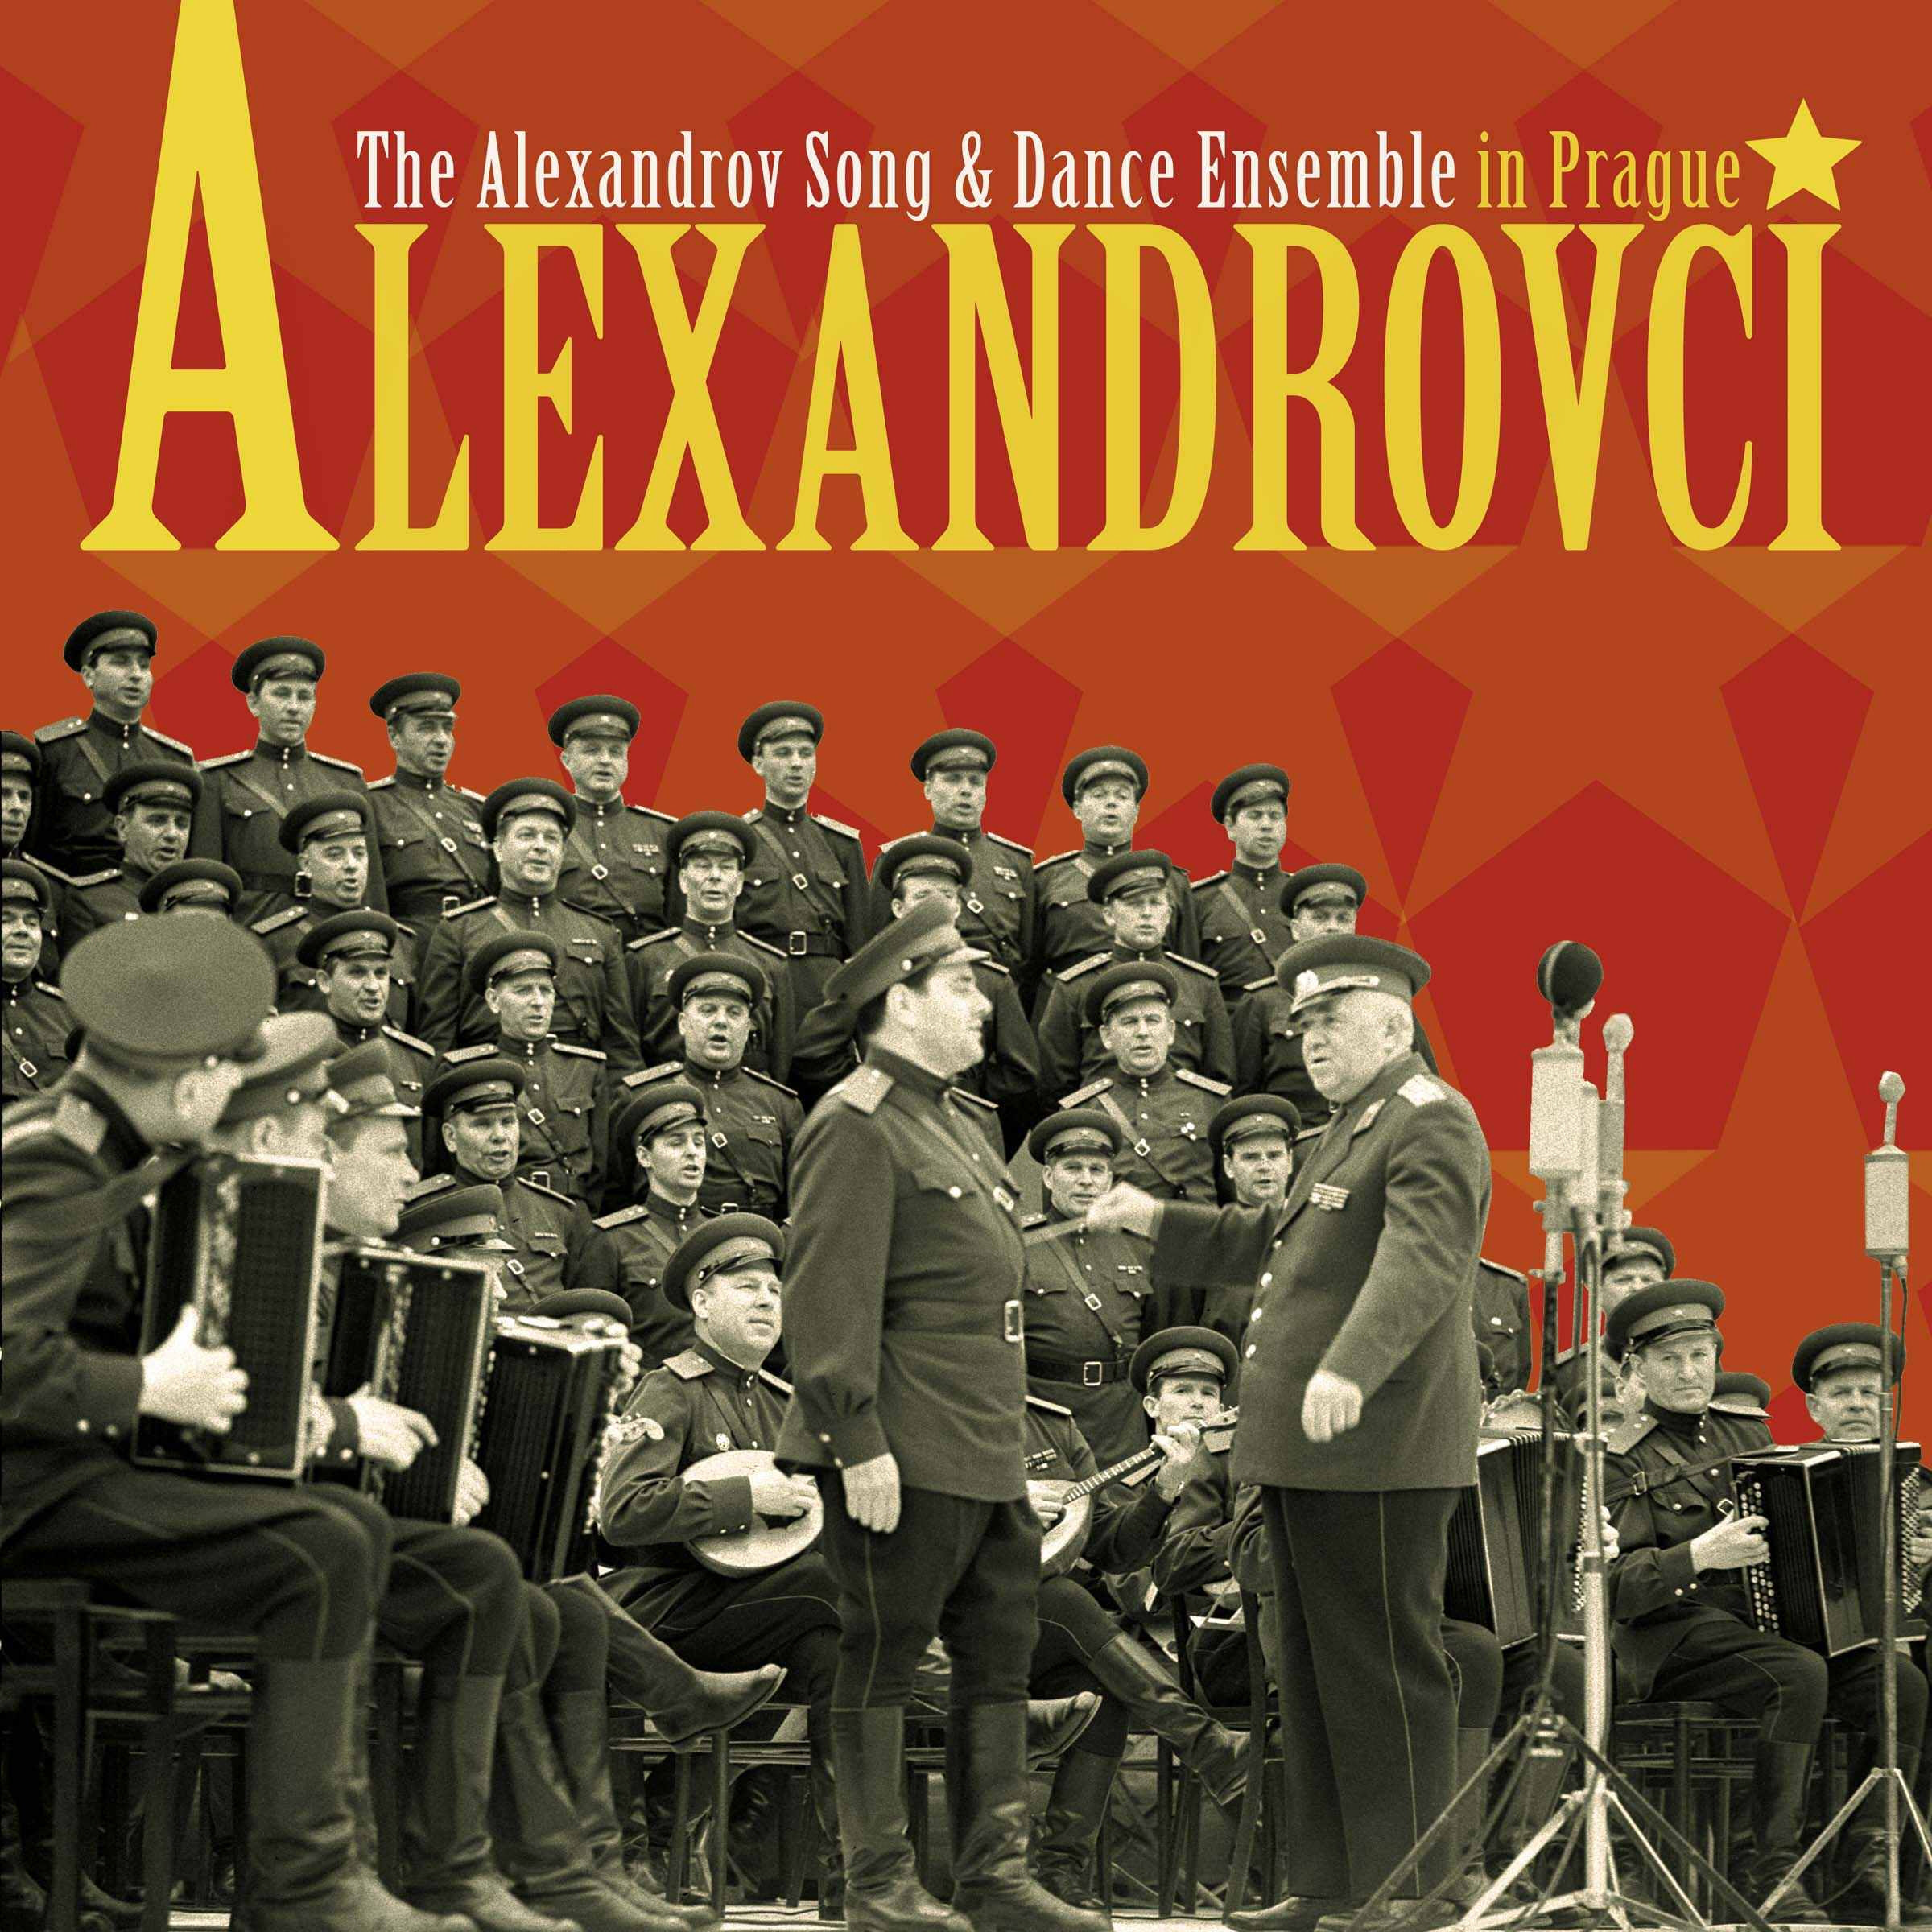 CD Shop - ALEXANDROVCI ALEXANDROV SONG